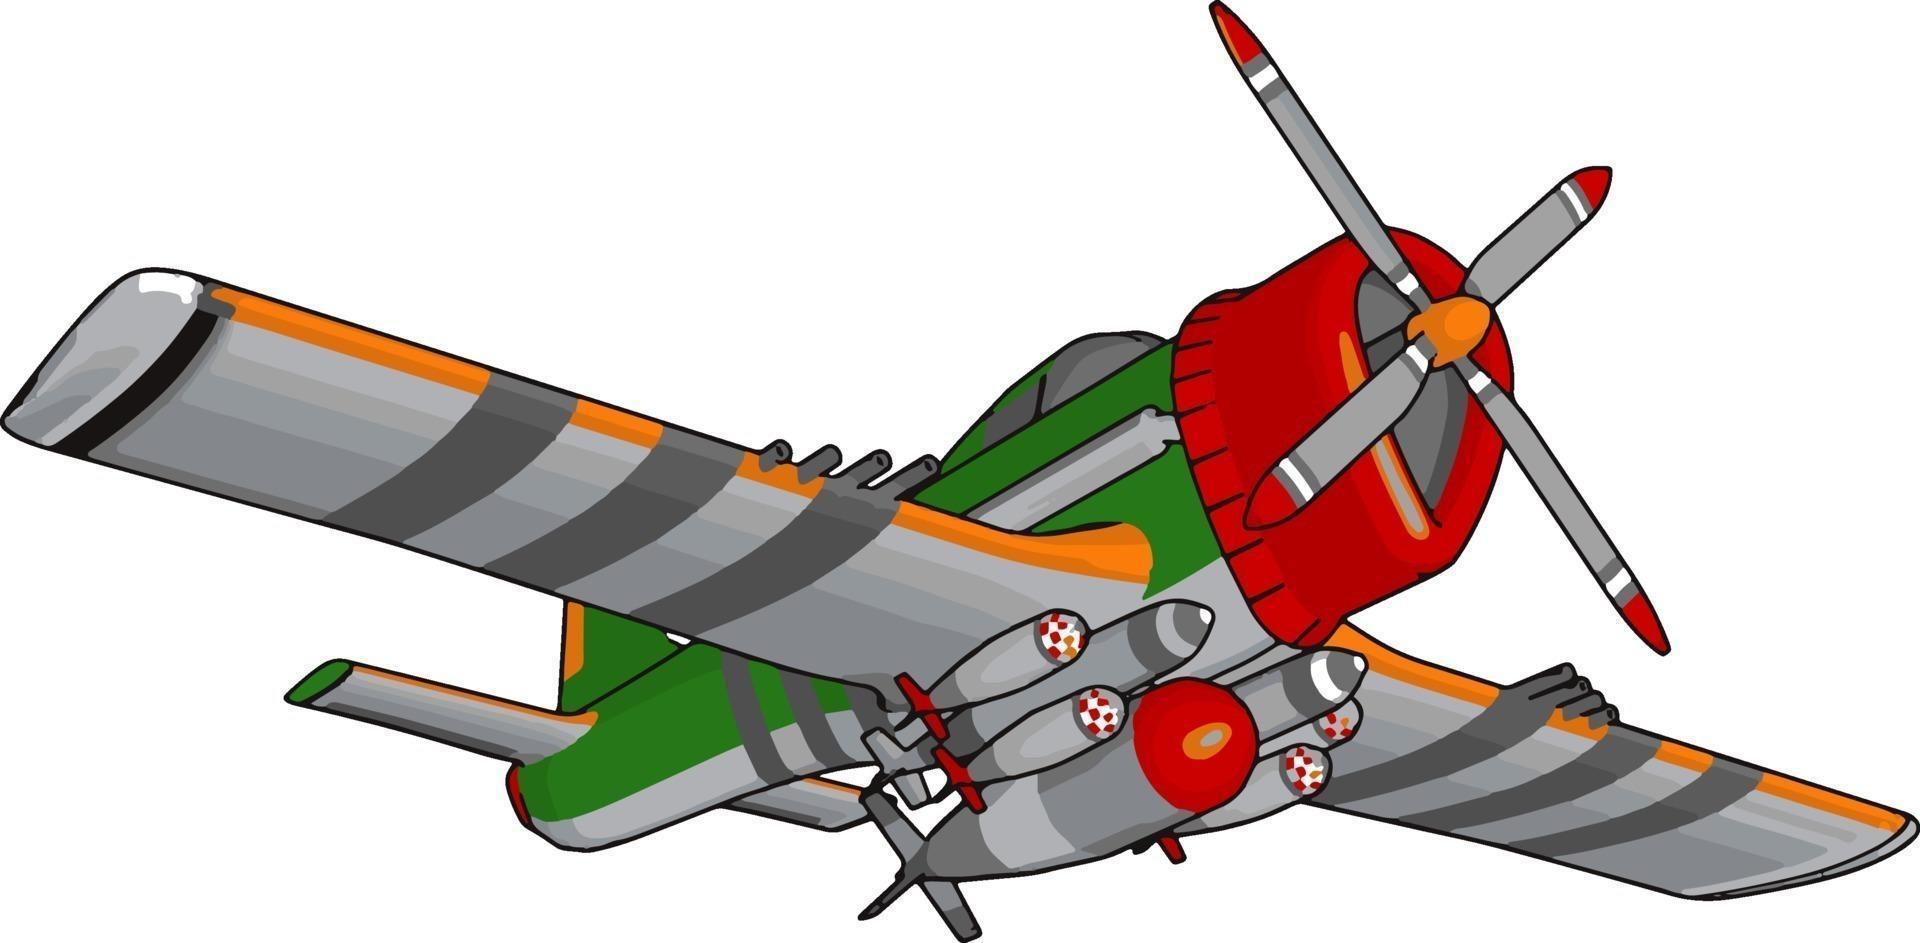 Bombardero retro, ilustración, vector sobre fondo blanco.